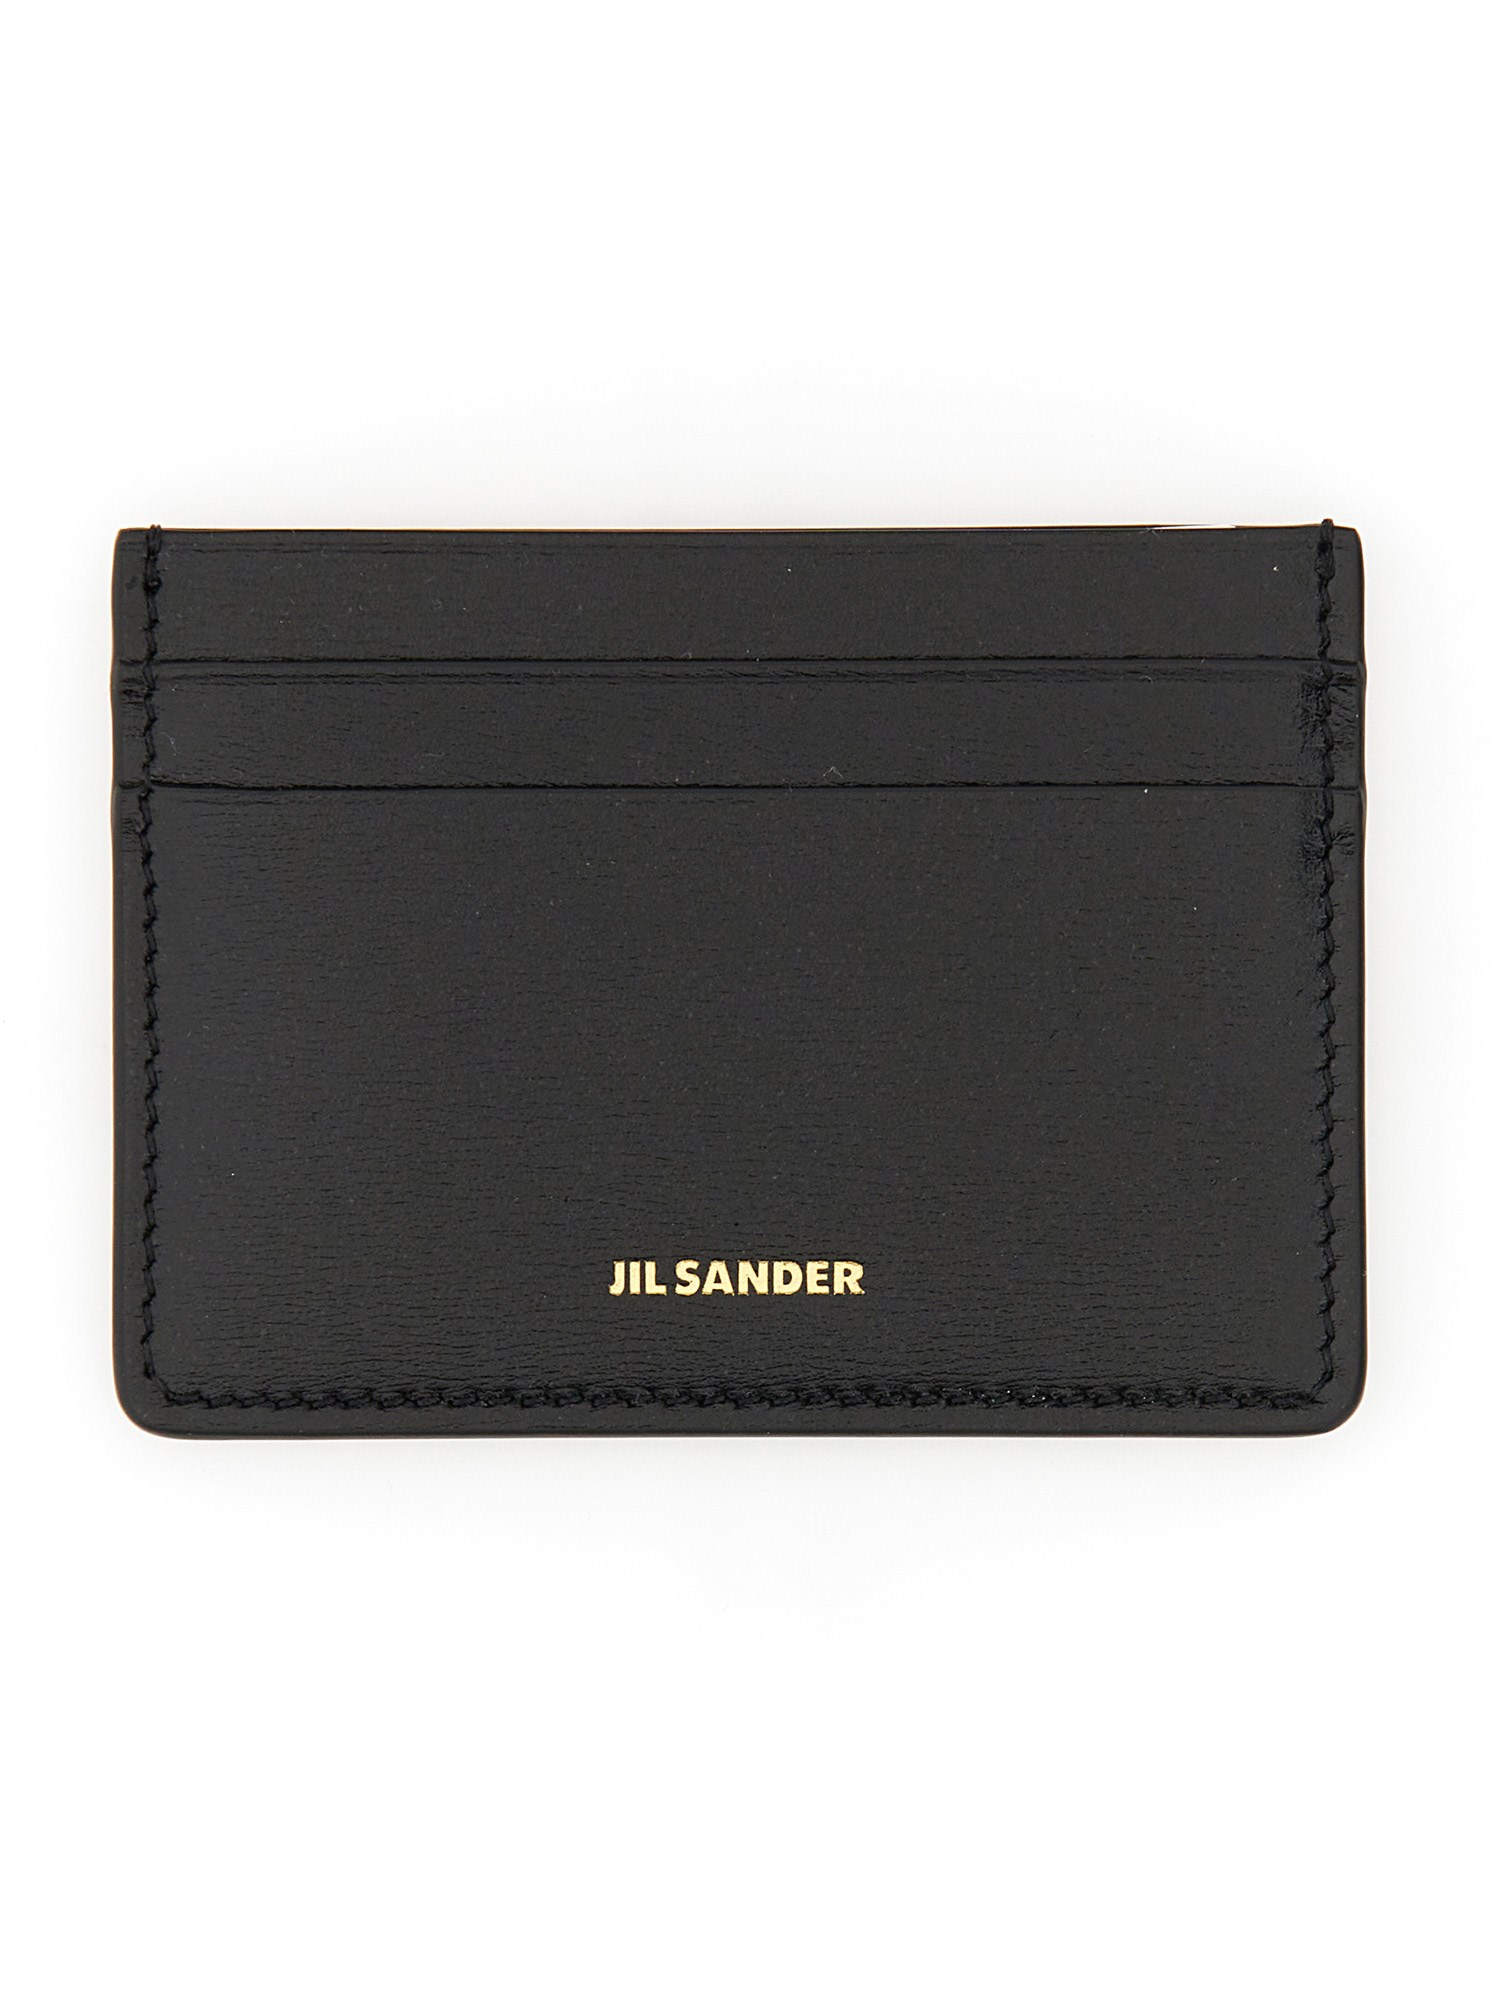 Jil Sander jil sander leather card holder